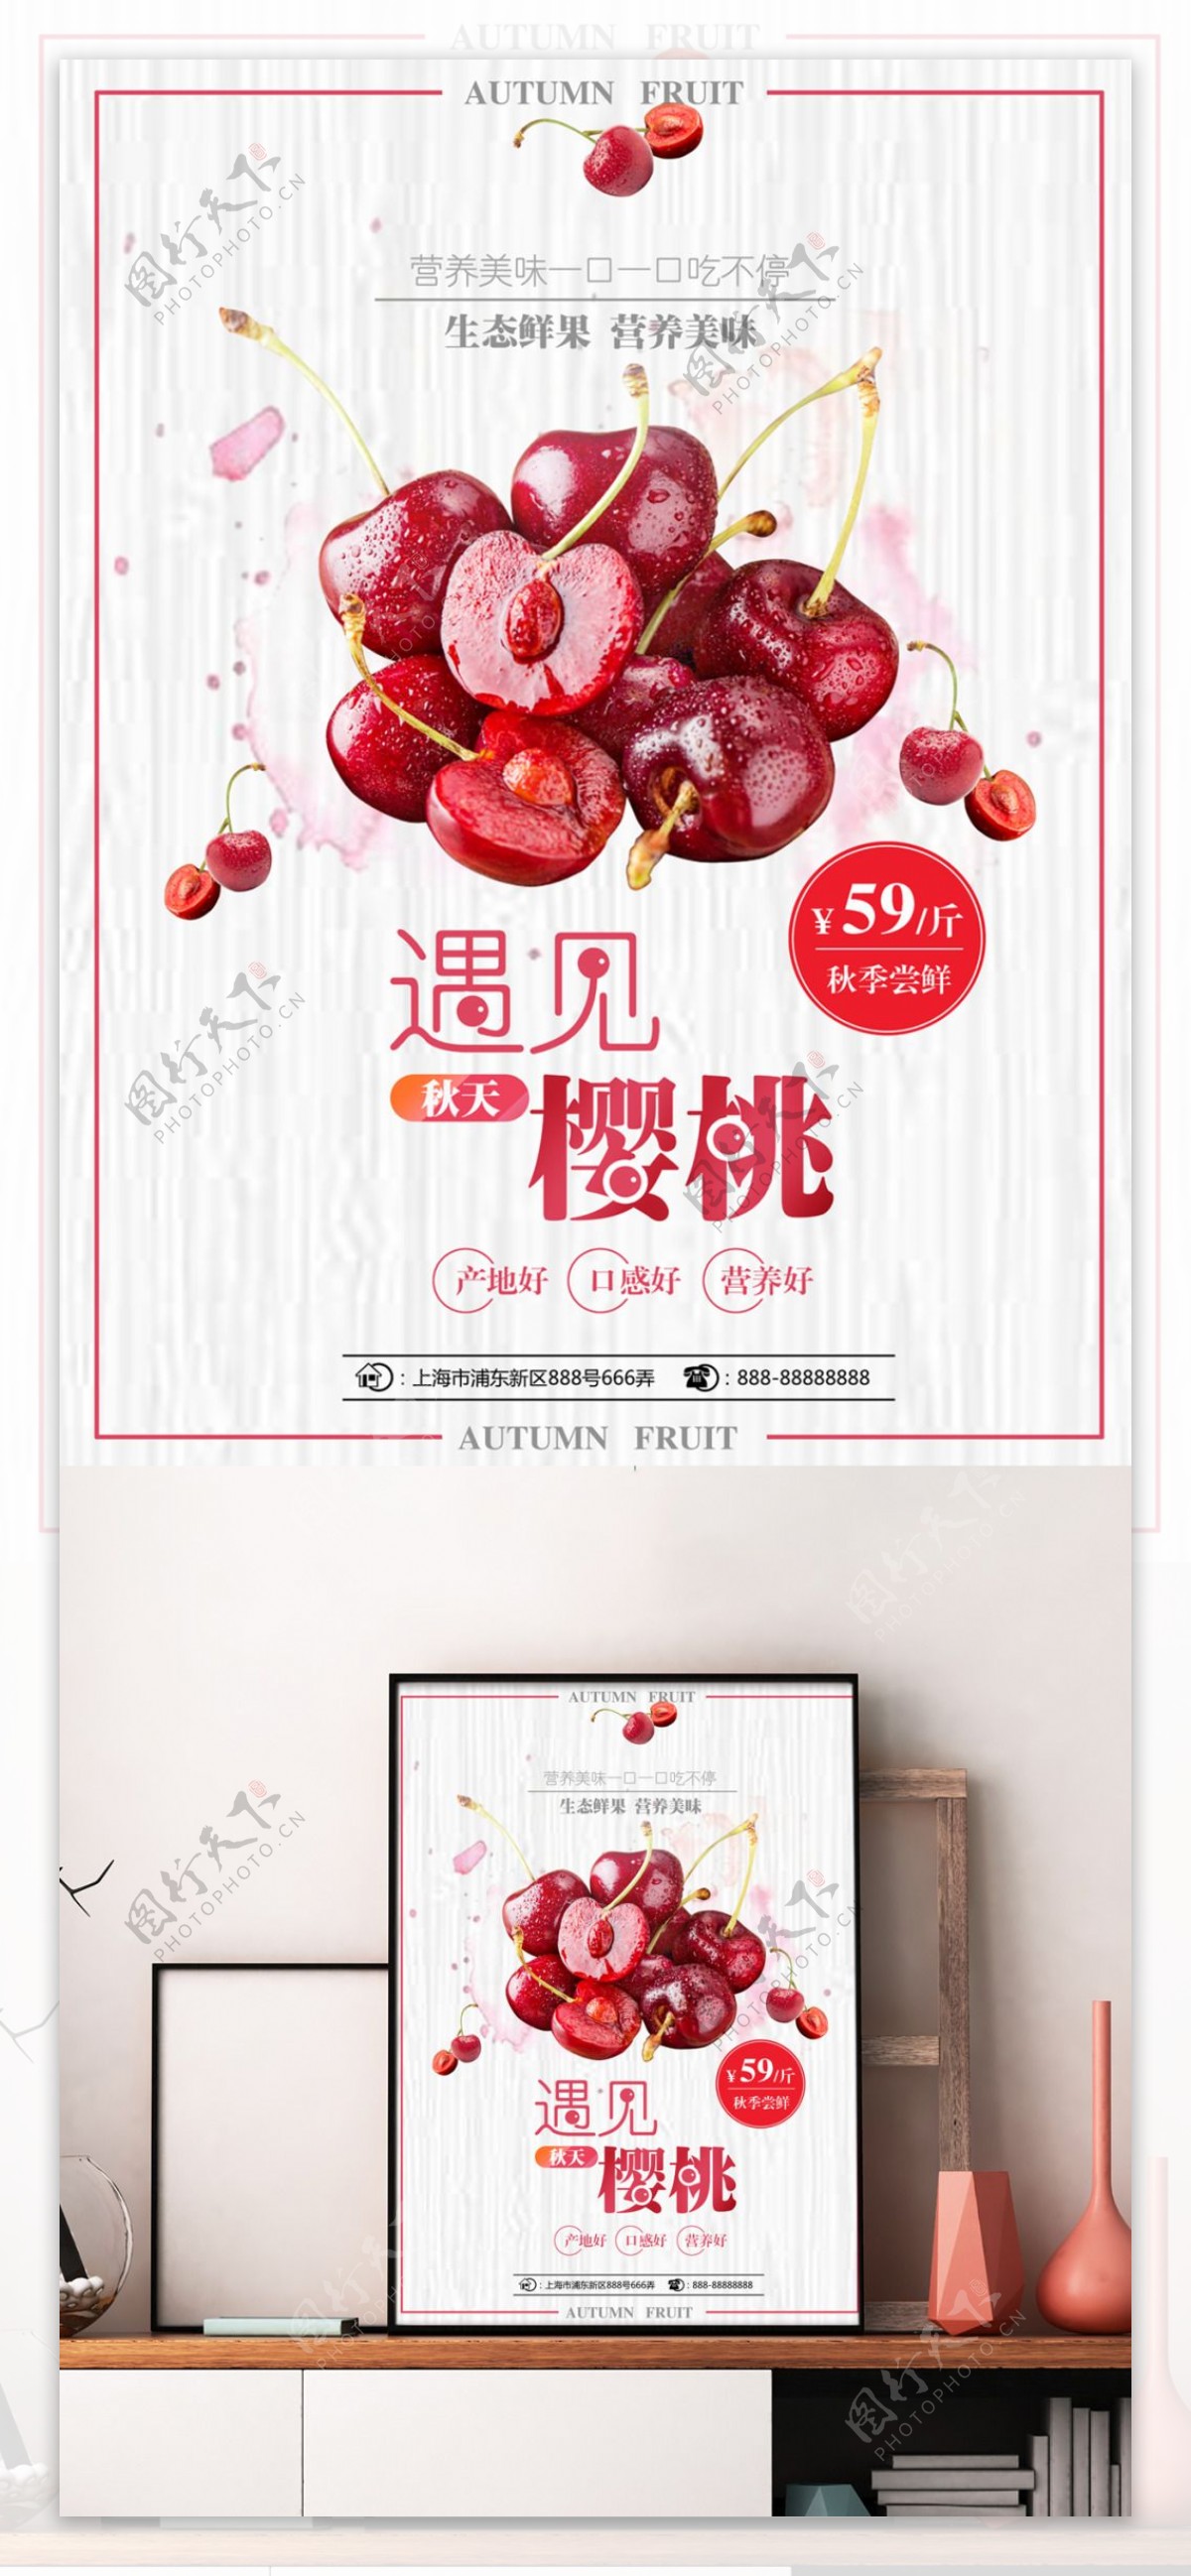 秋季水果樱桃生态水果营养美味简约促销海报